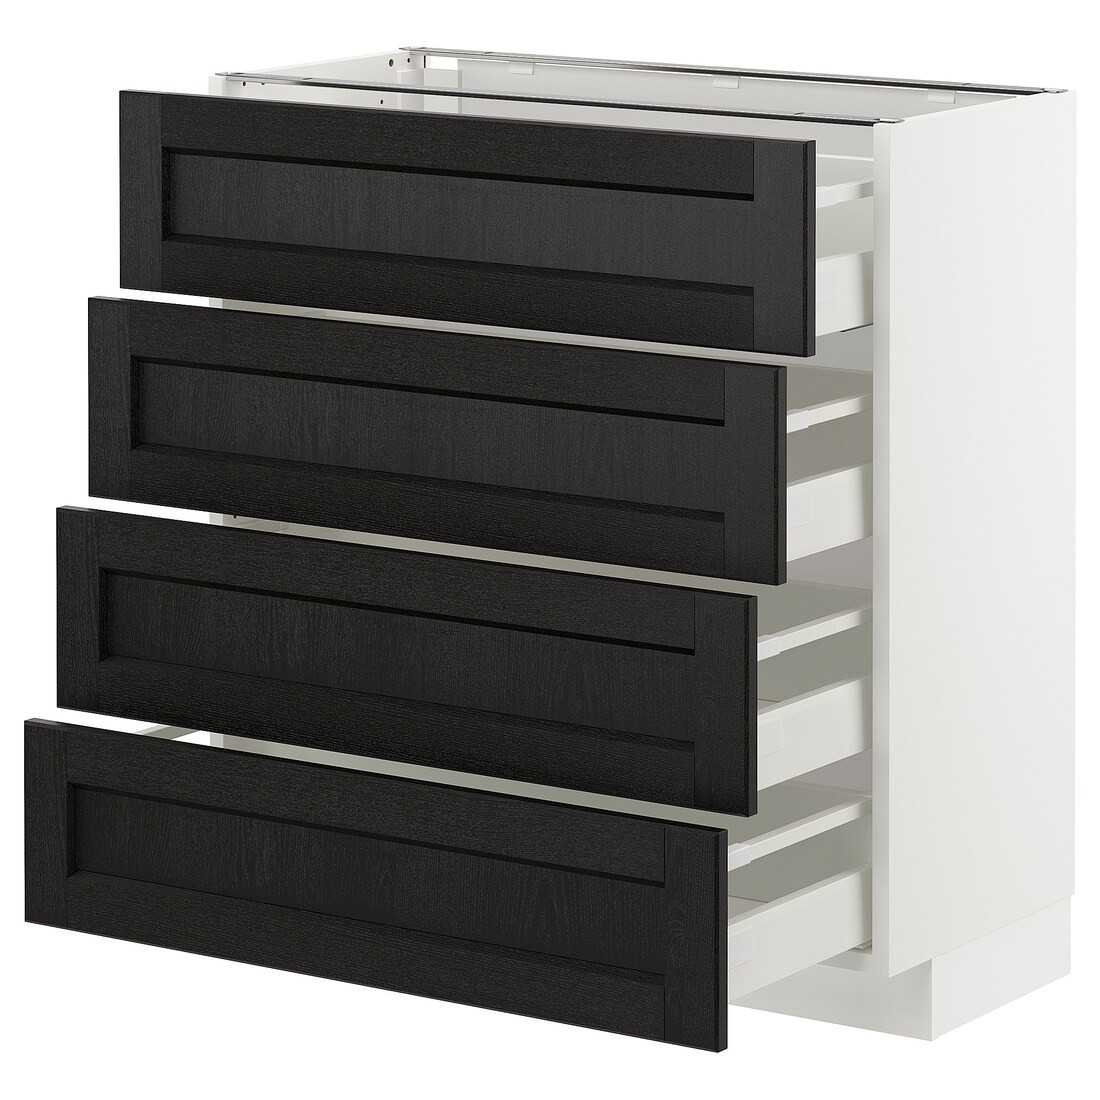 IKEA METOD МЕТОД / MAXIMERA МАКСИМЕРА Напольный шкаф с ящиками, белый / Lerhyttan черная морилка, 80x37 см 99256803 992.568.03